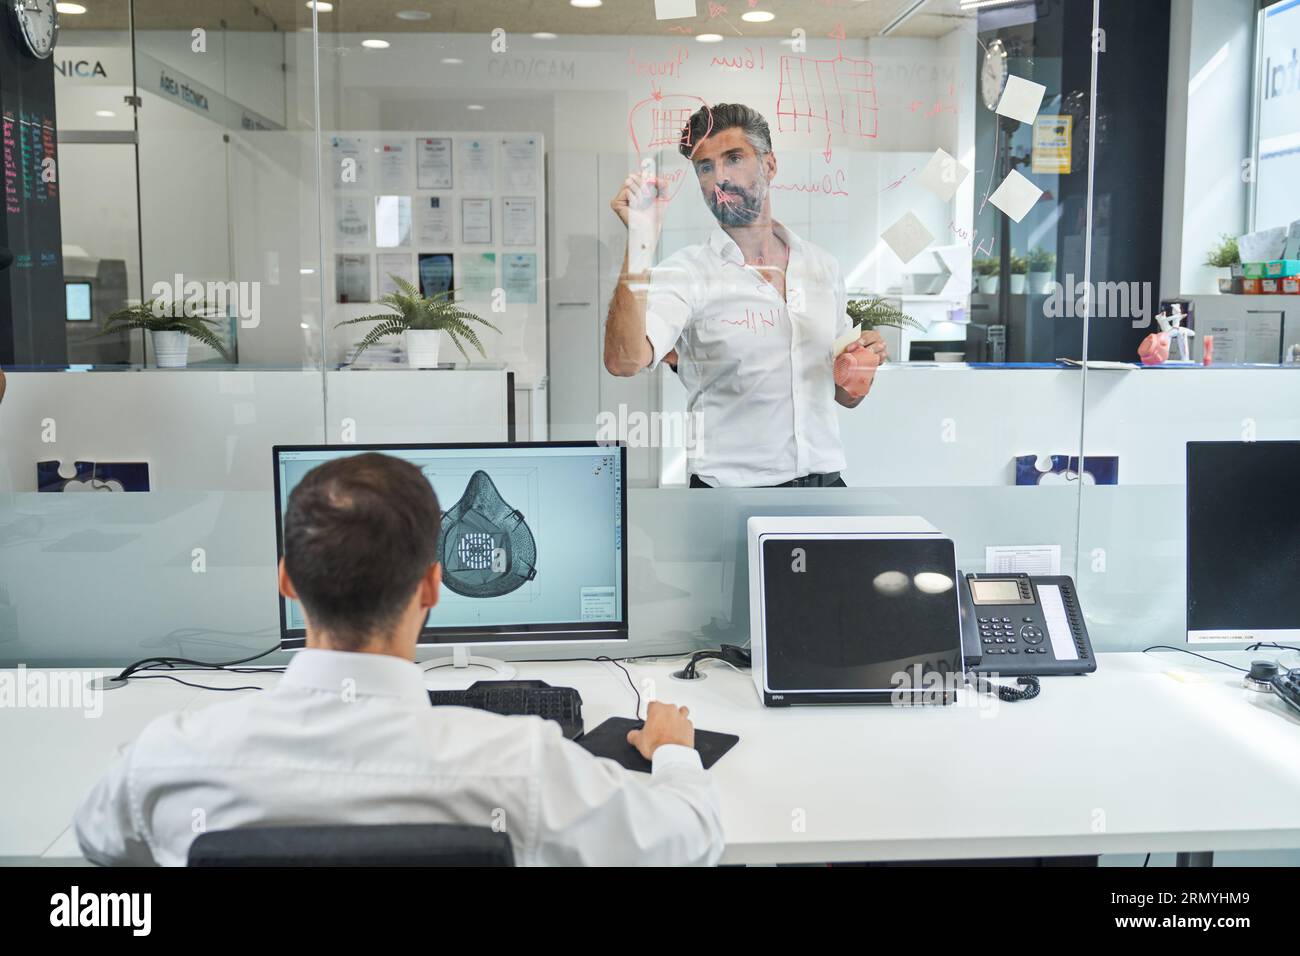 Rückansicht eines anonymen männlichen Arbeiters, der eine Skizze der covid-Maske vorbereitet, während der Kollege ein Schema auf Glaswand im Labor zeichnet Stockfoto